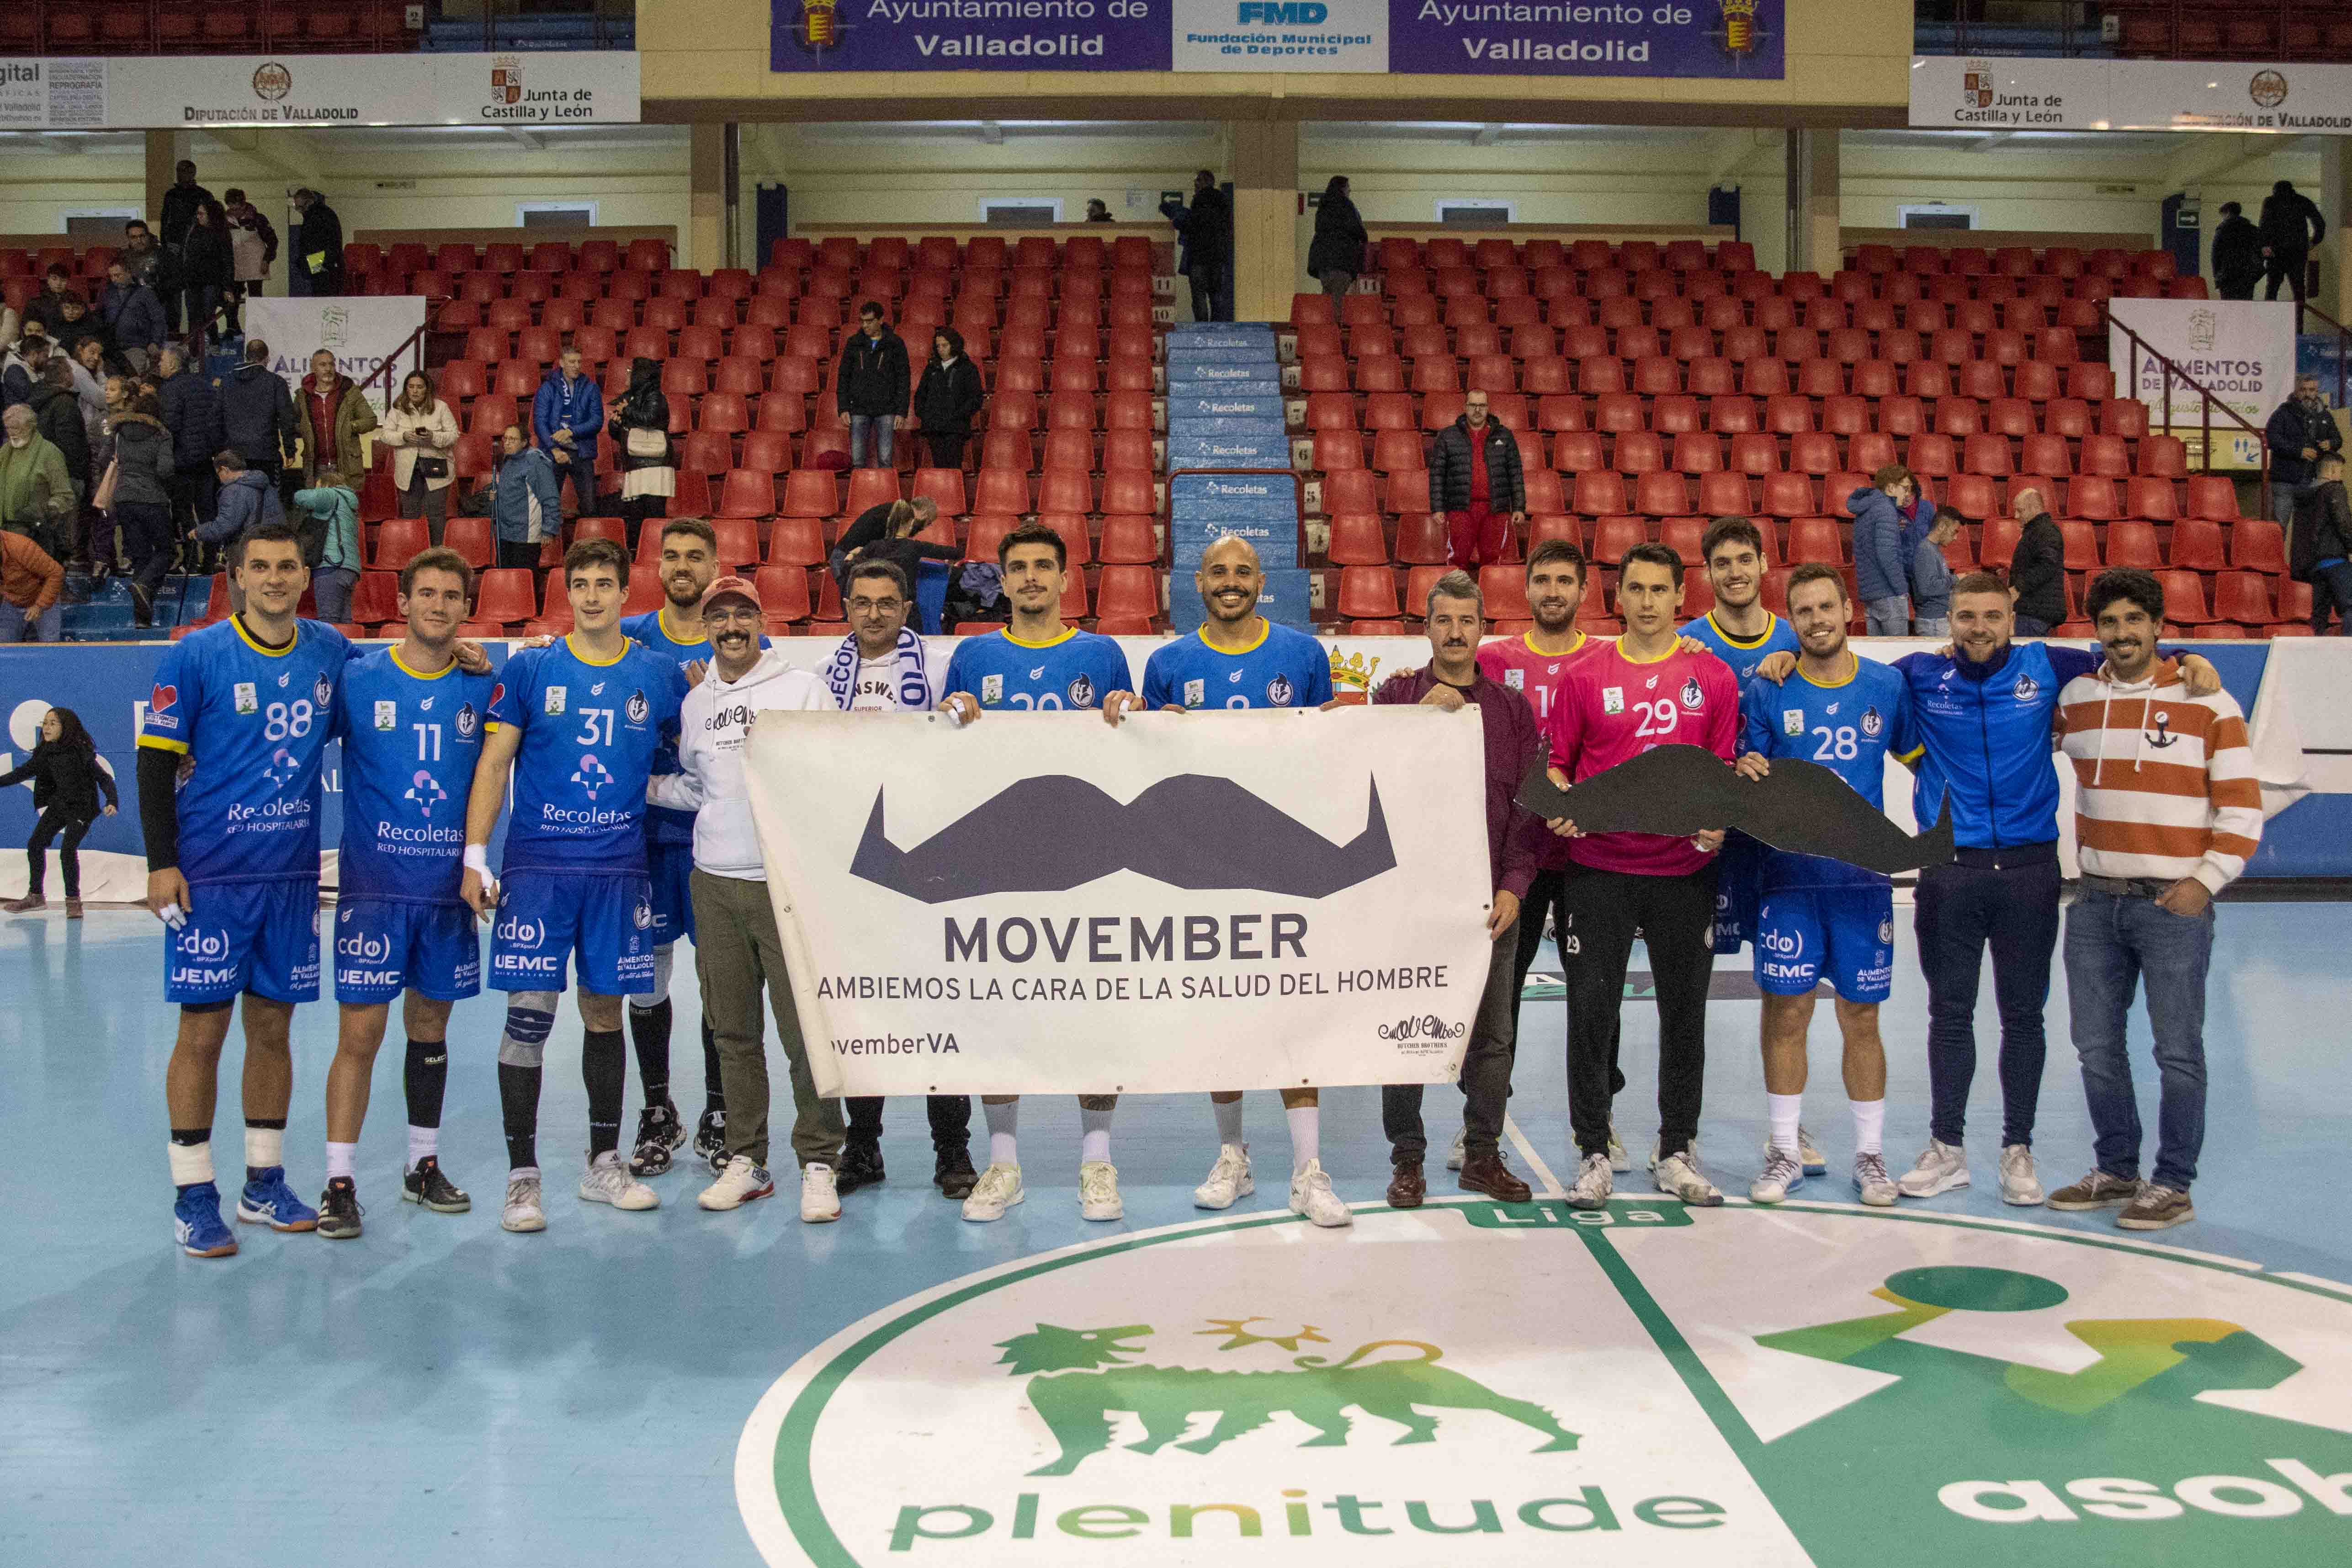 Un año más el Recoletas Atlético Valladolid apoya la iniciativa Movember